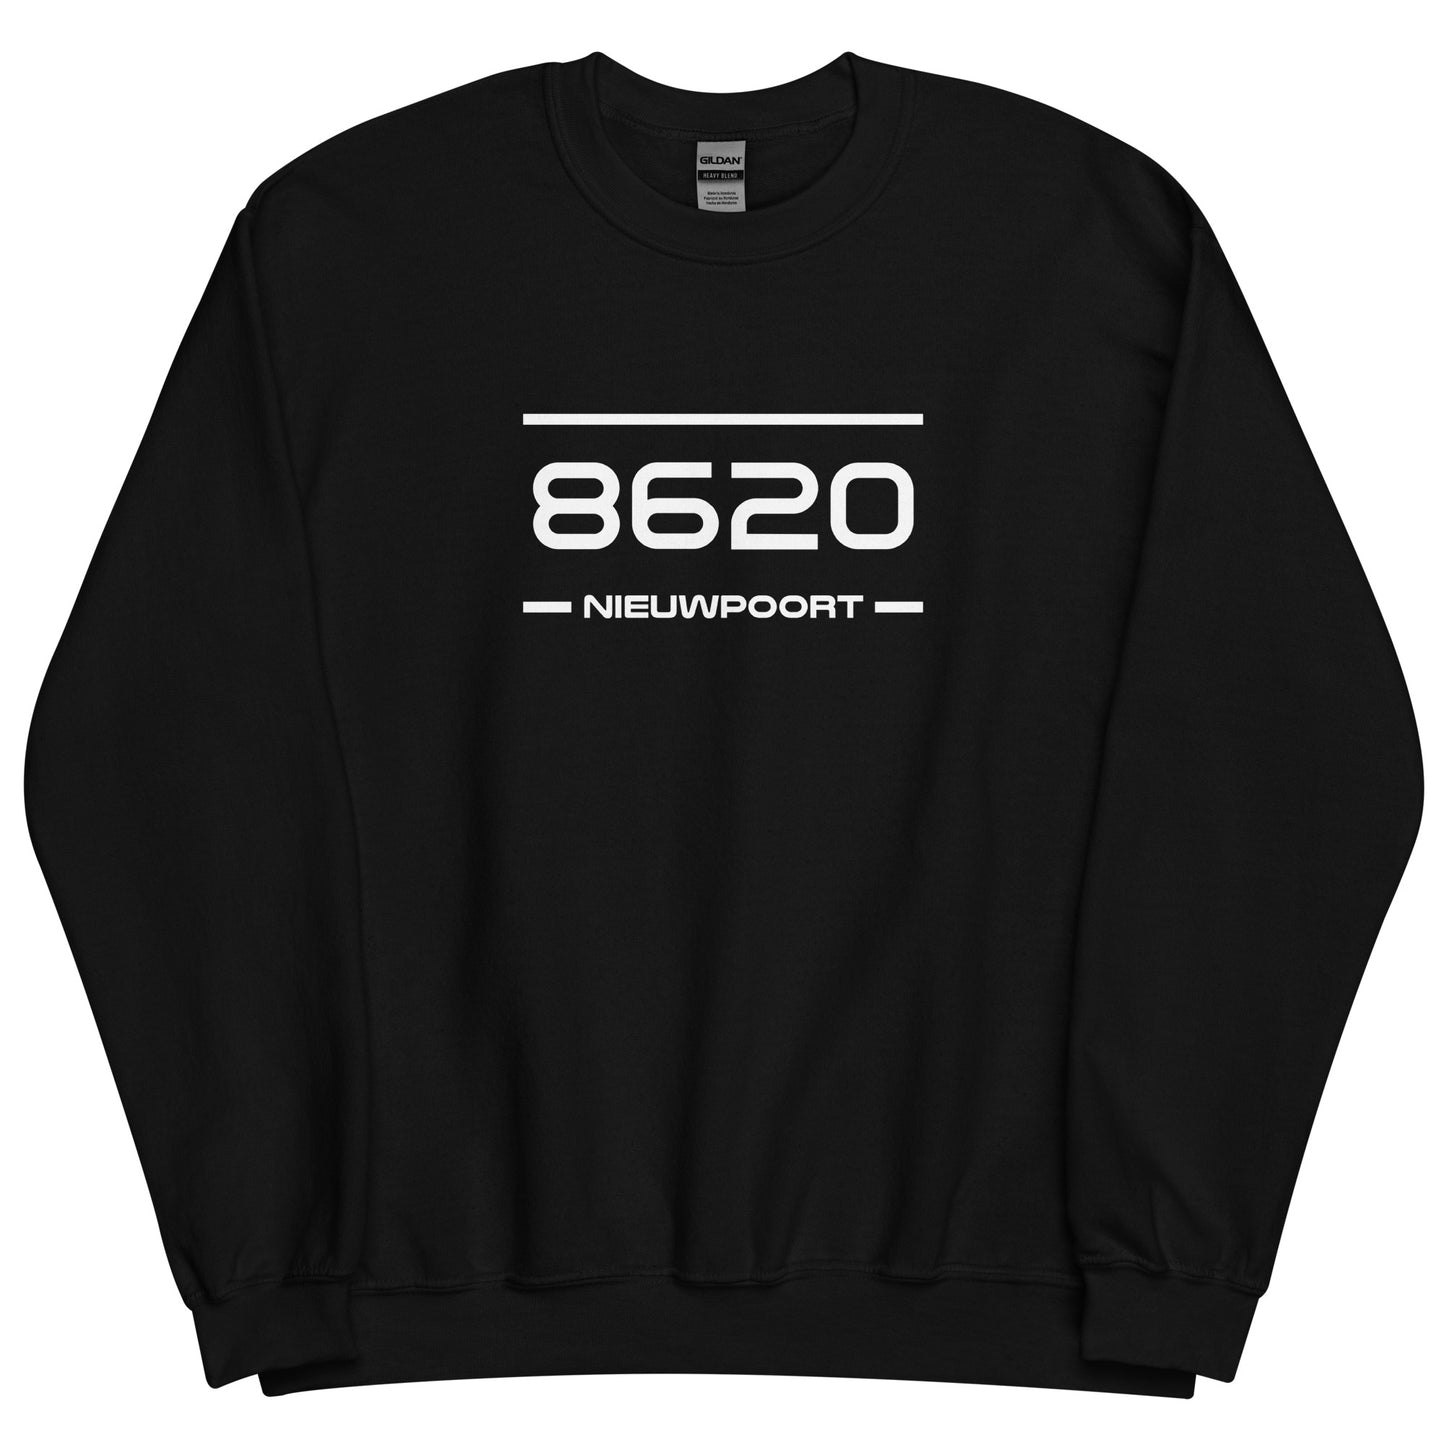 Sweater - 8620 - Nieuwpoort (M/V)